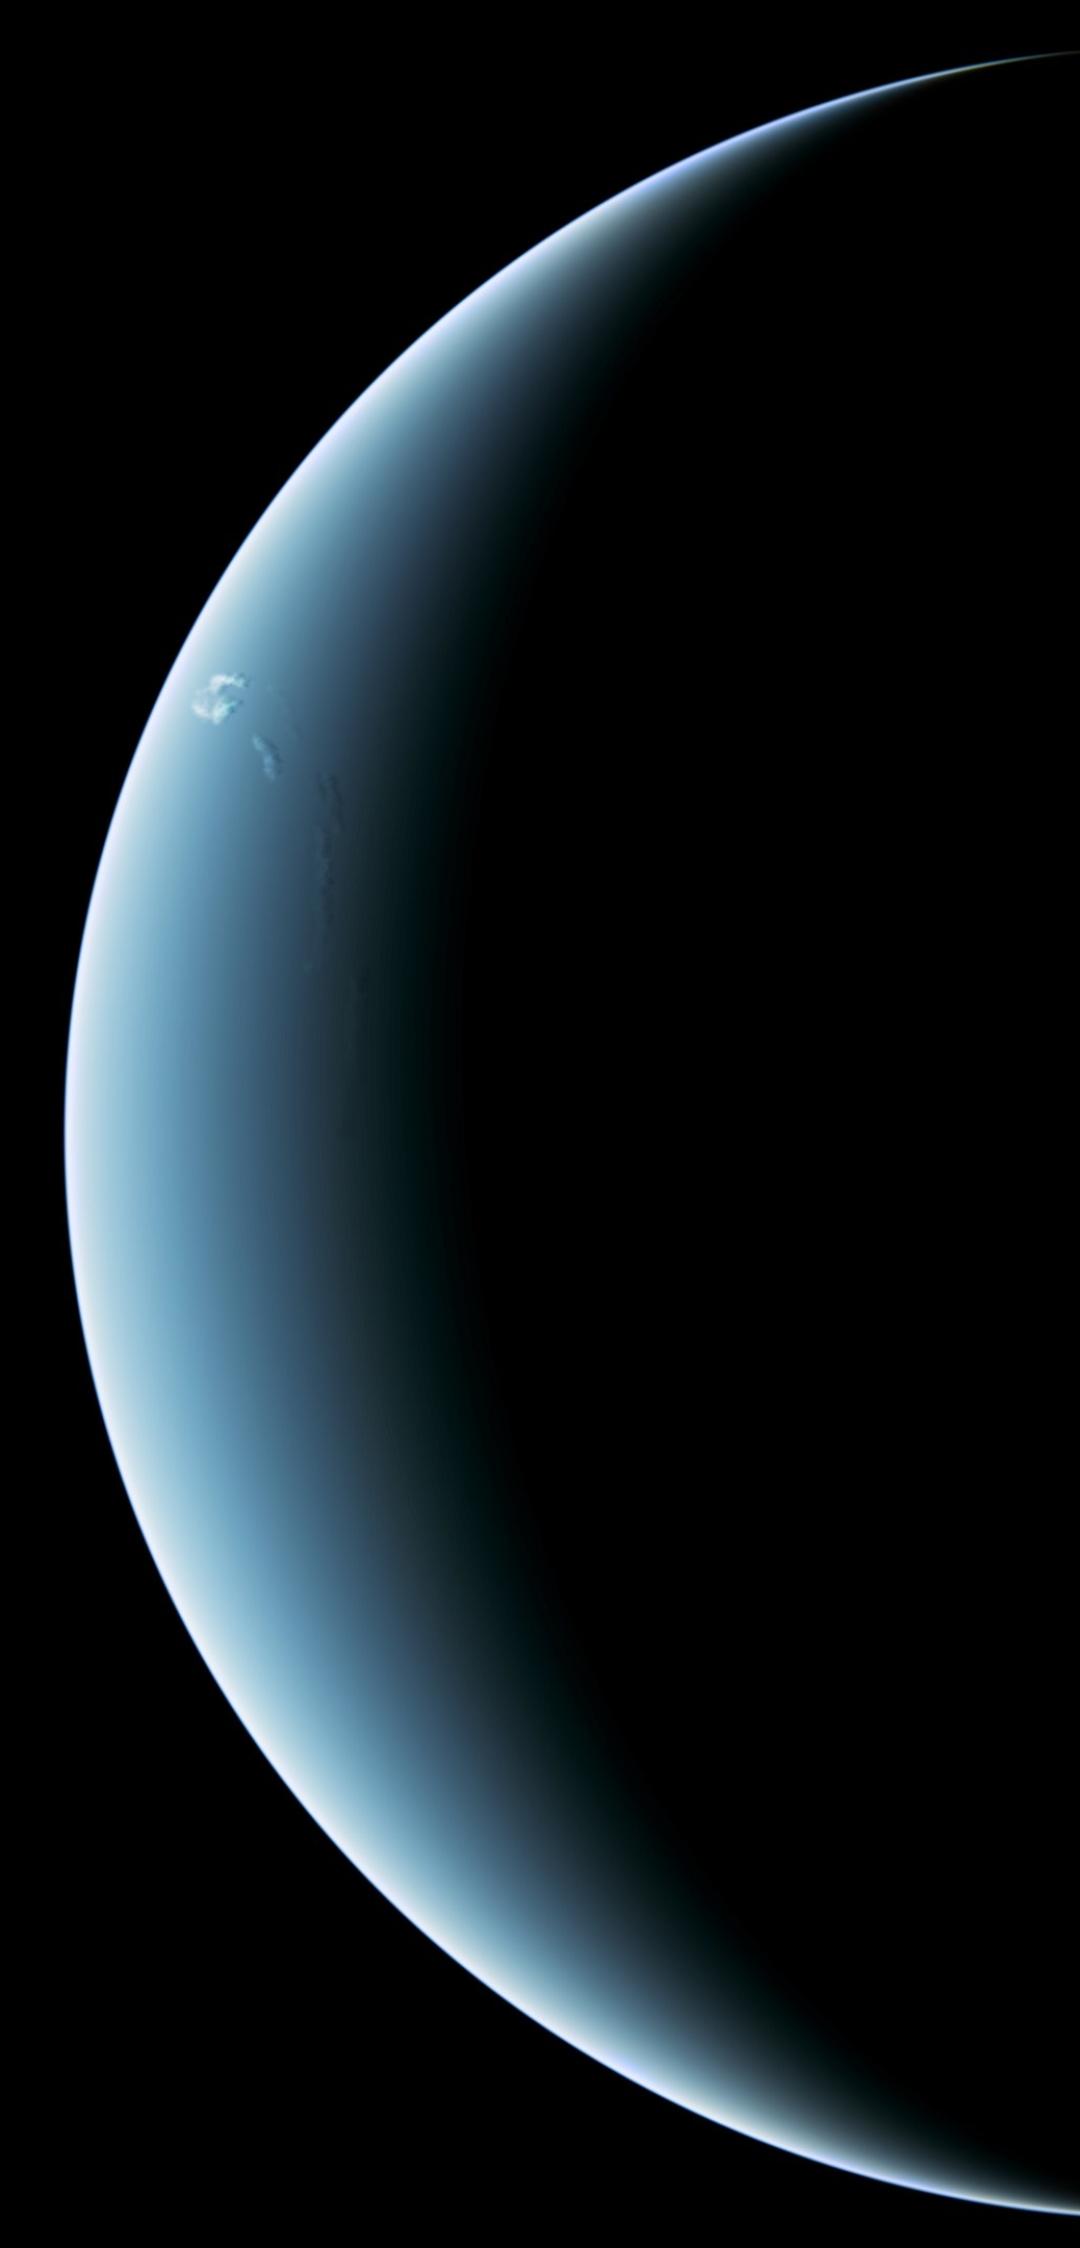 Sci Fi|Neptune